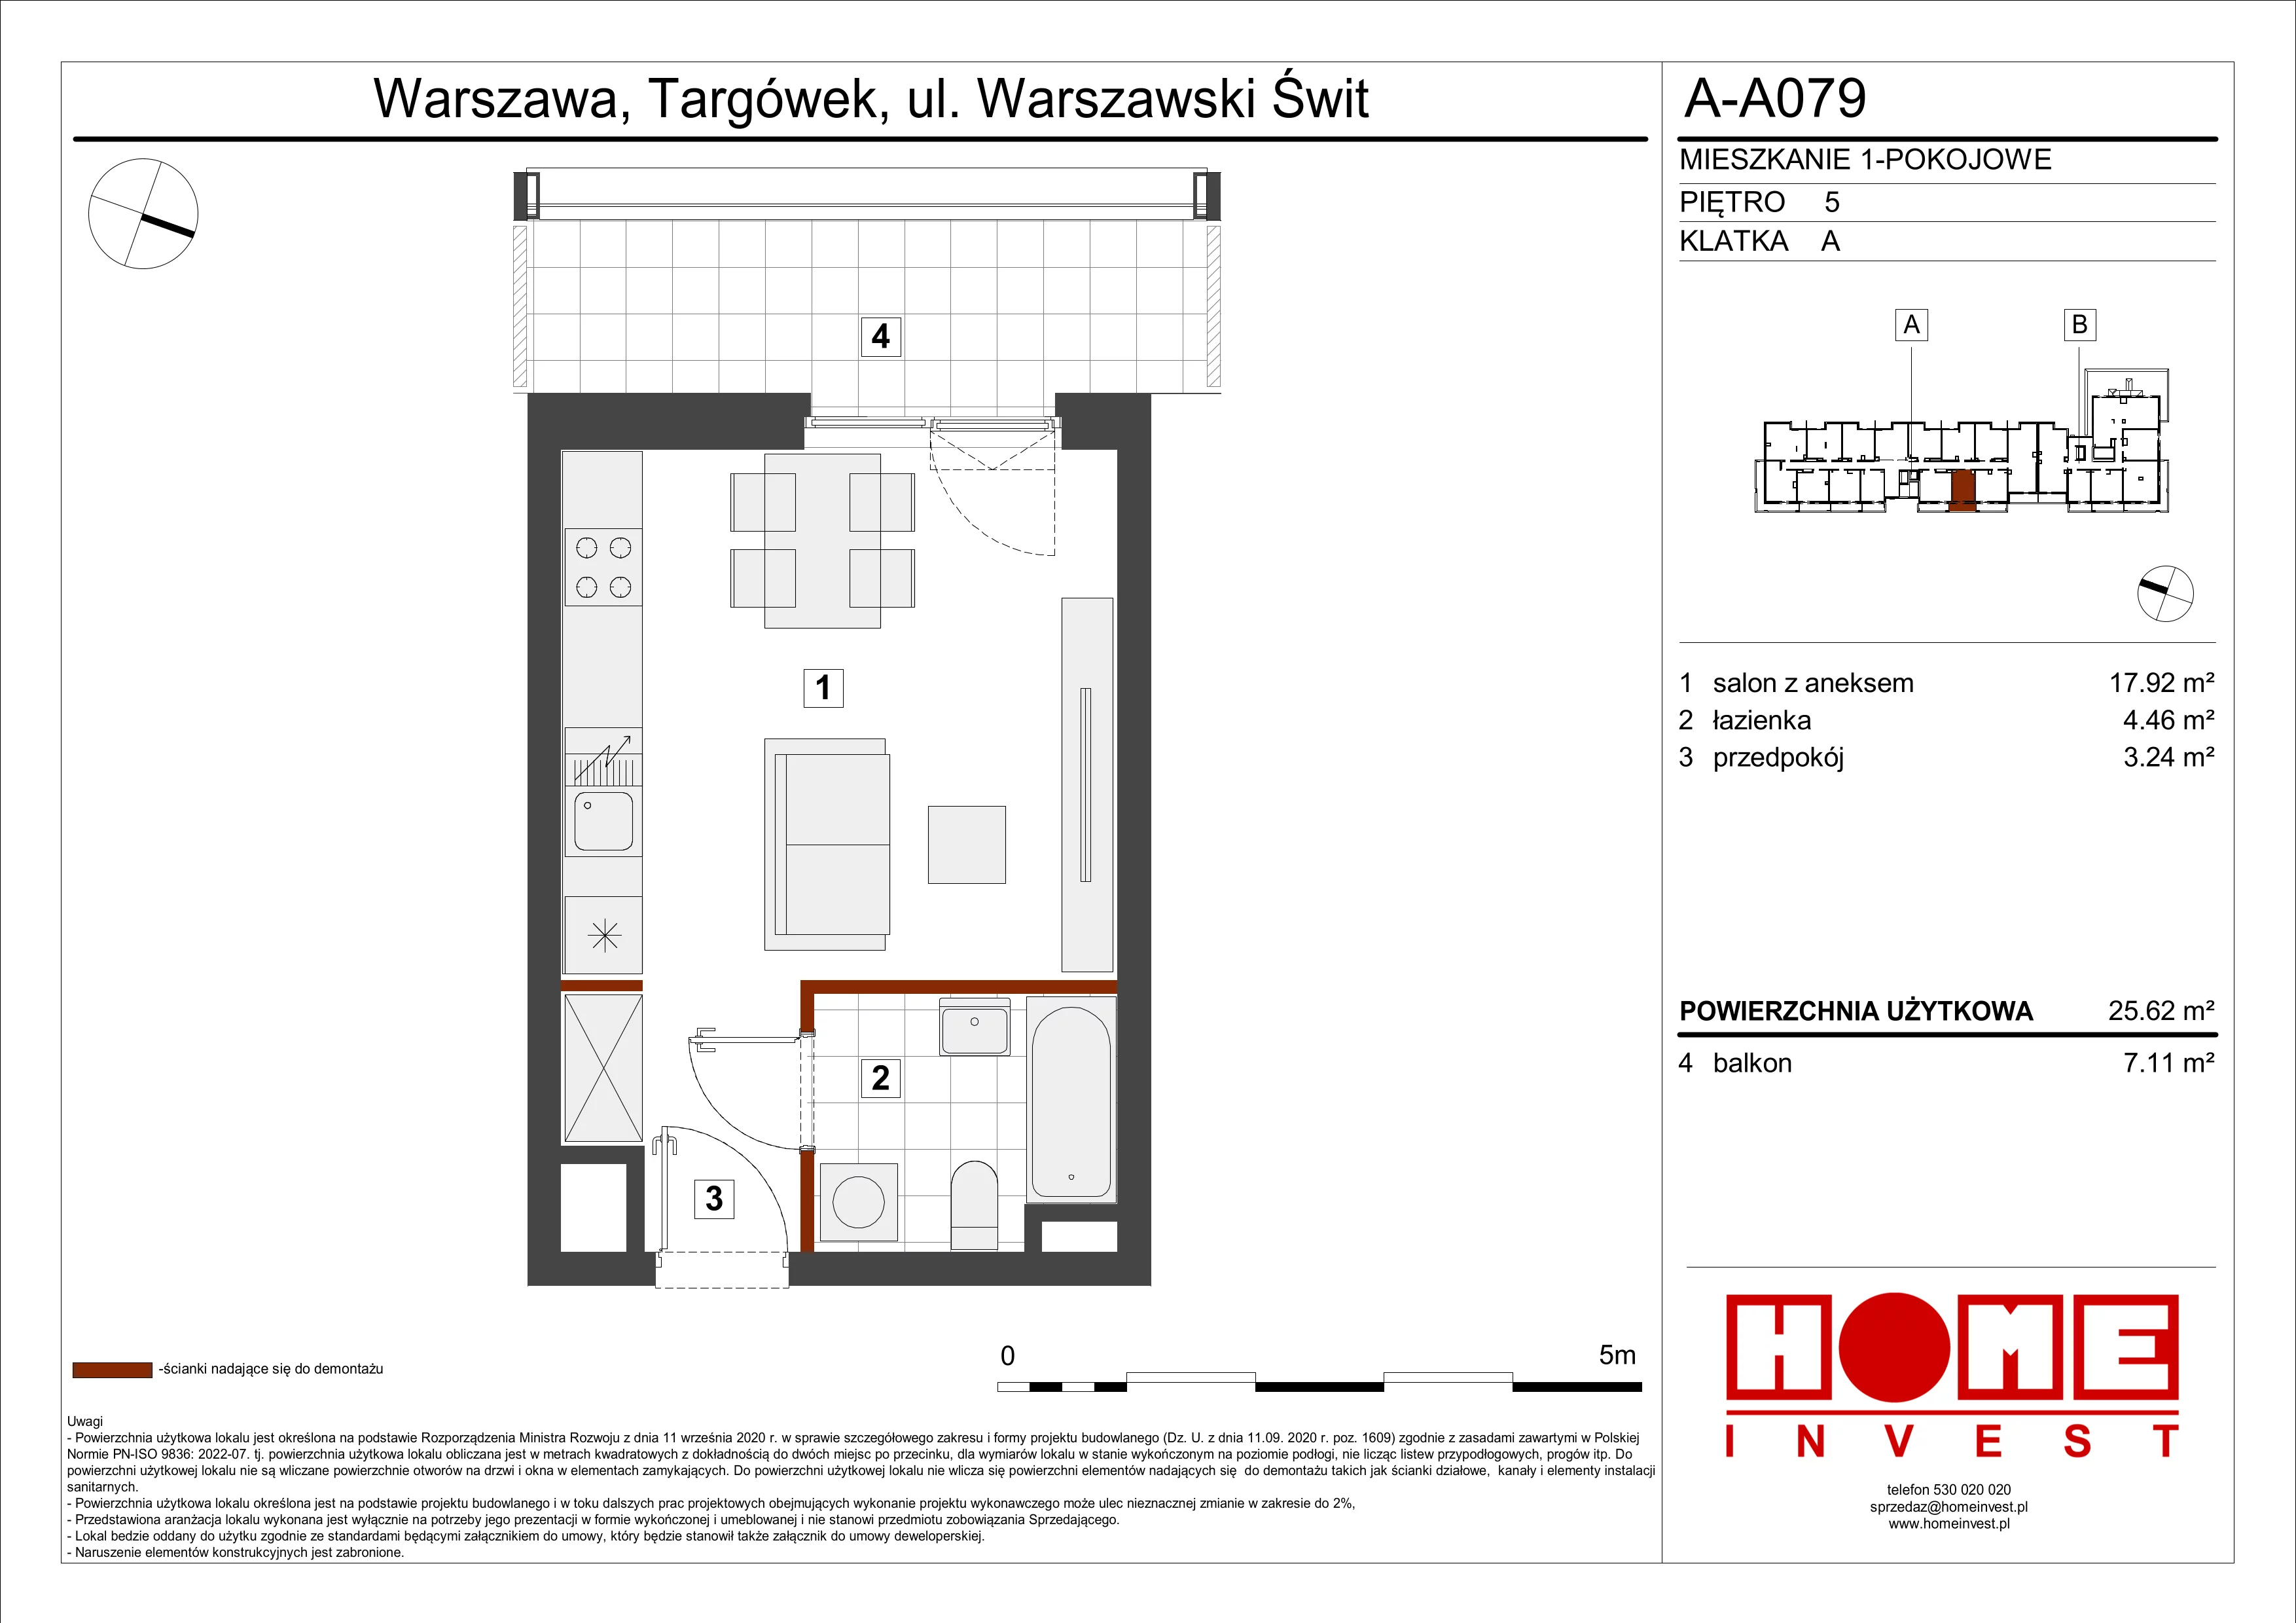 Mieszkanie 25,62 m², piętro 5, oferta nr A-A079, Warszawski Świt, Warszawa, Targówek, Bródno, ul. Warszawski Świt 5